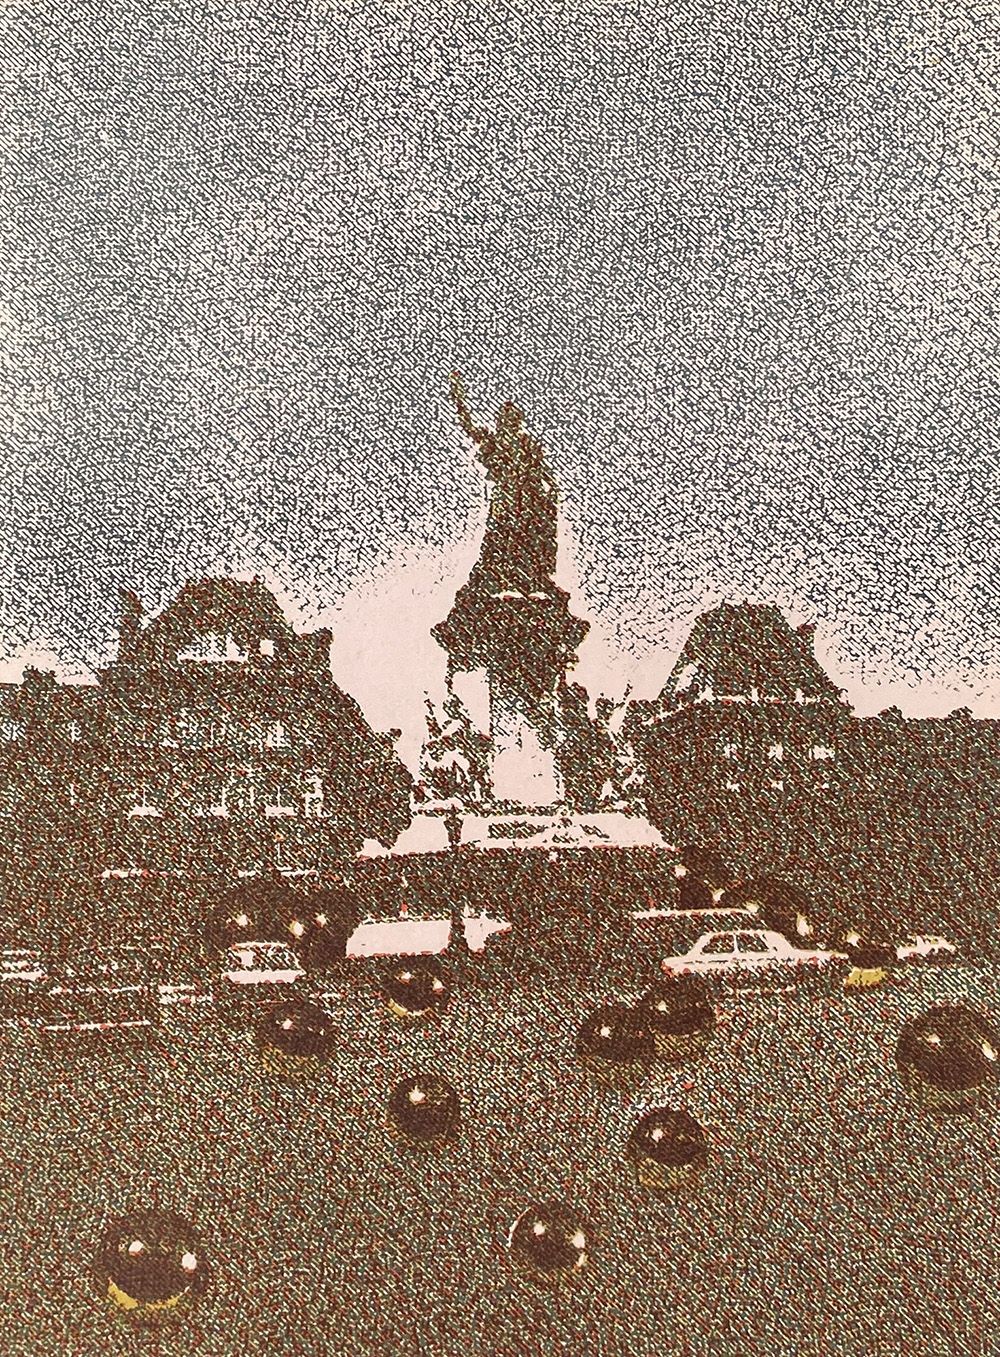 DLM191 - Place de la République